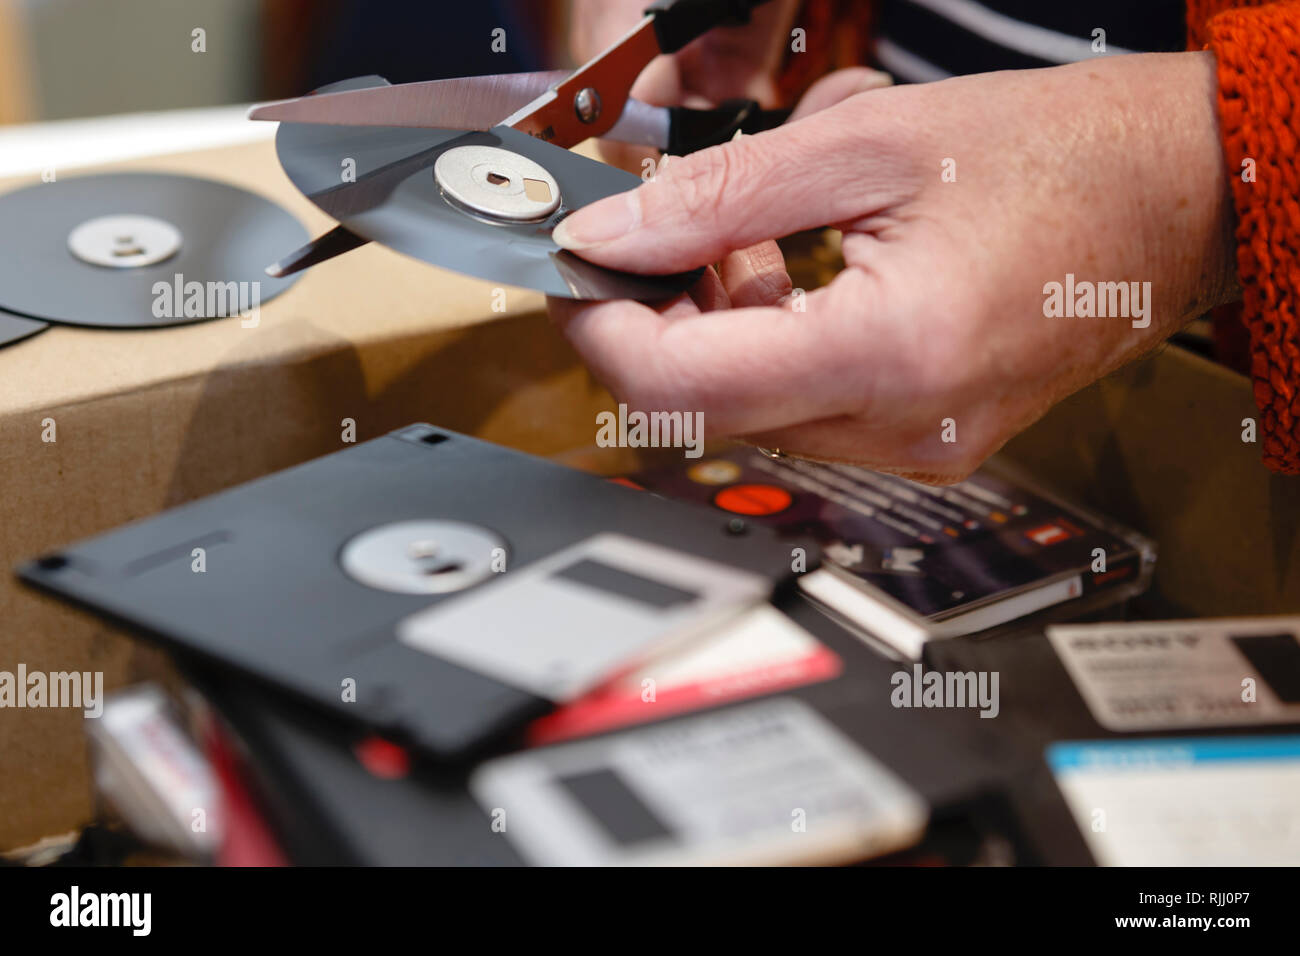 Taglio fino vecchio floppy disc con le forbici per distruggere le informazioni Foto Stock